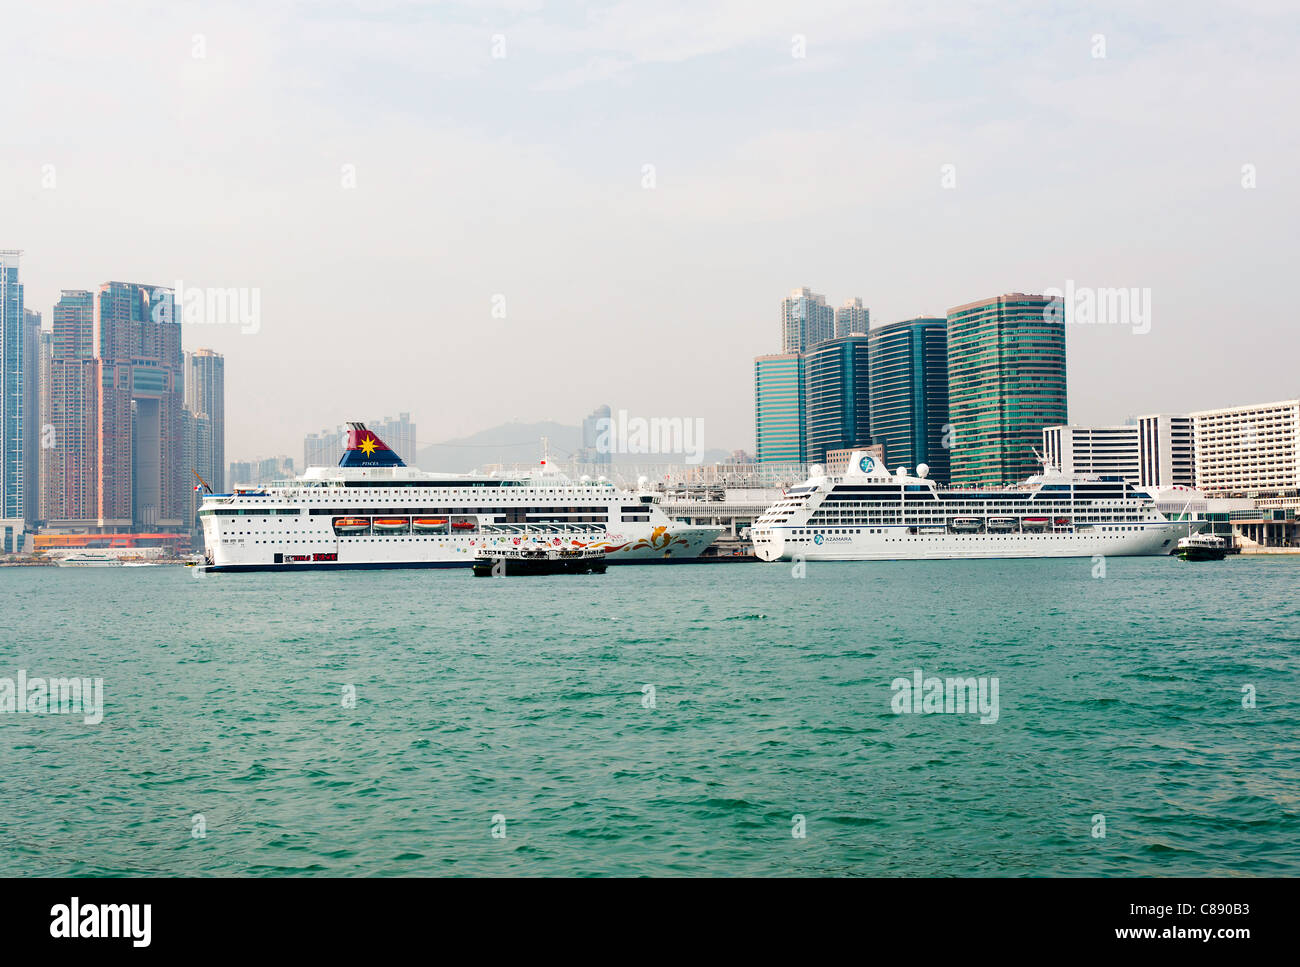 Les bateaux de croisière amarrés dans le port de Victoria avec Star Ferry de Kowloon Hong Kong Chine Asie Banque D'Images